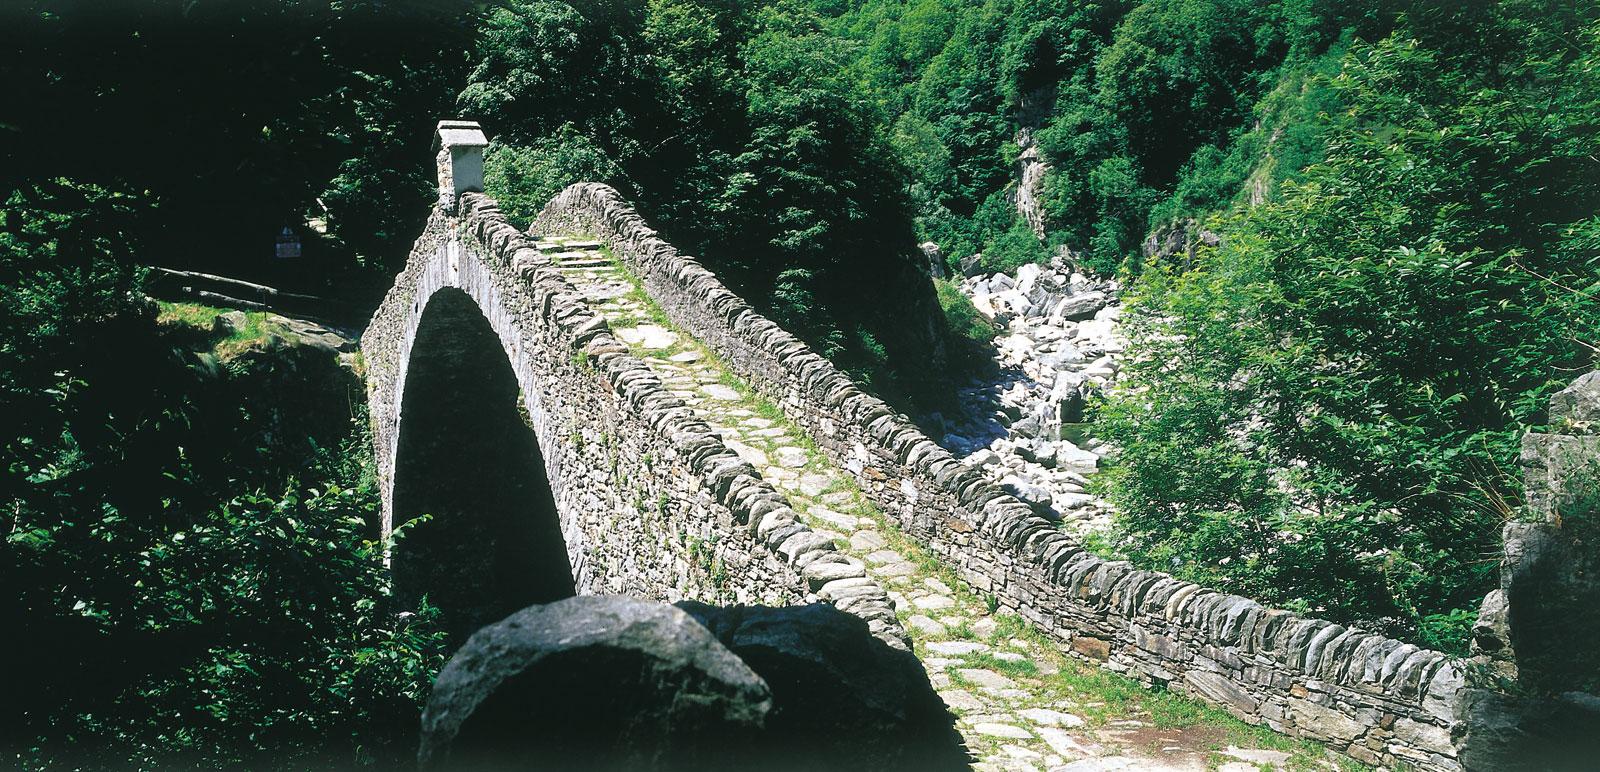 Ponte Romano bei Intragna - eine alte Steinbrücke